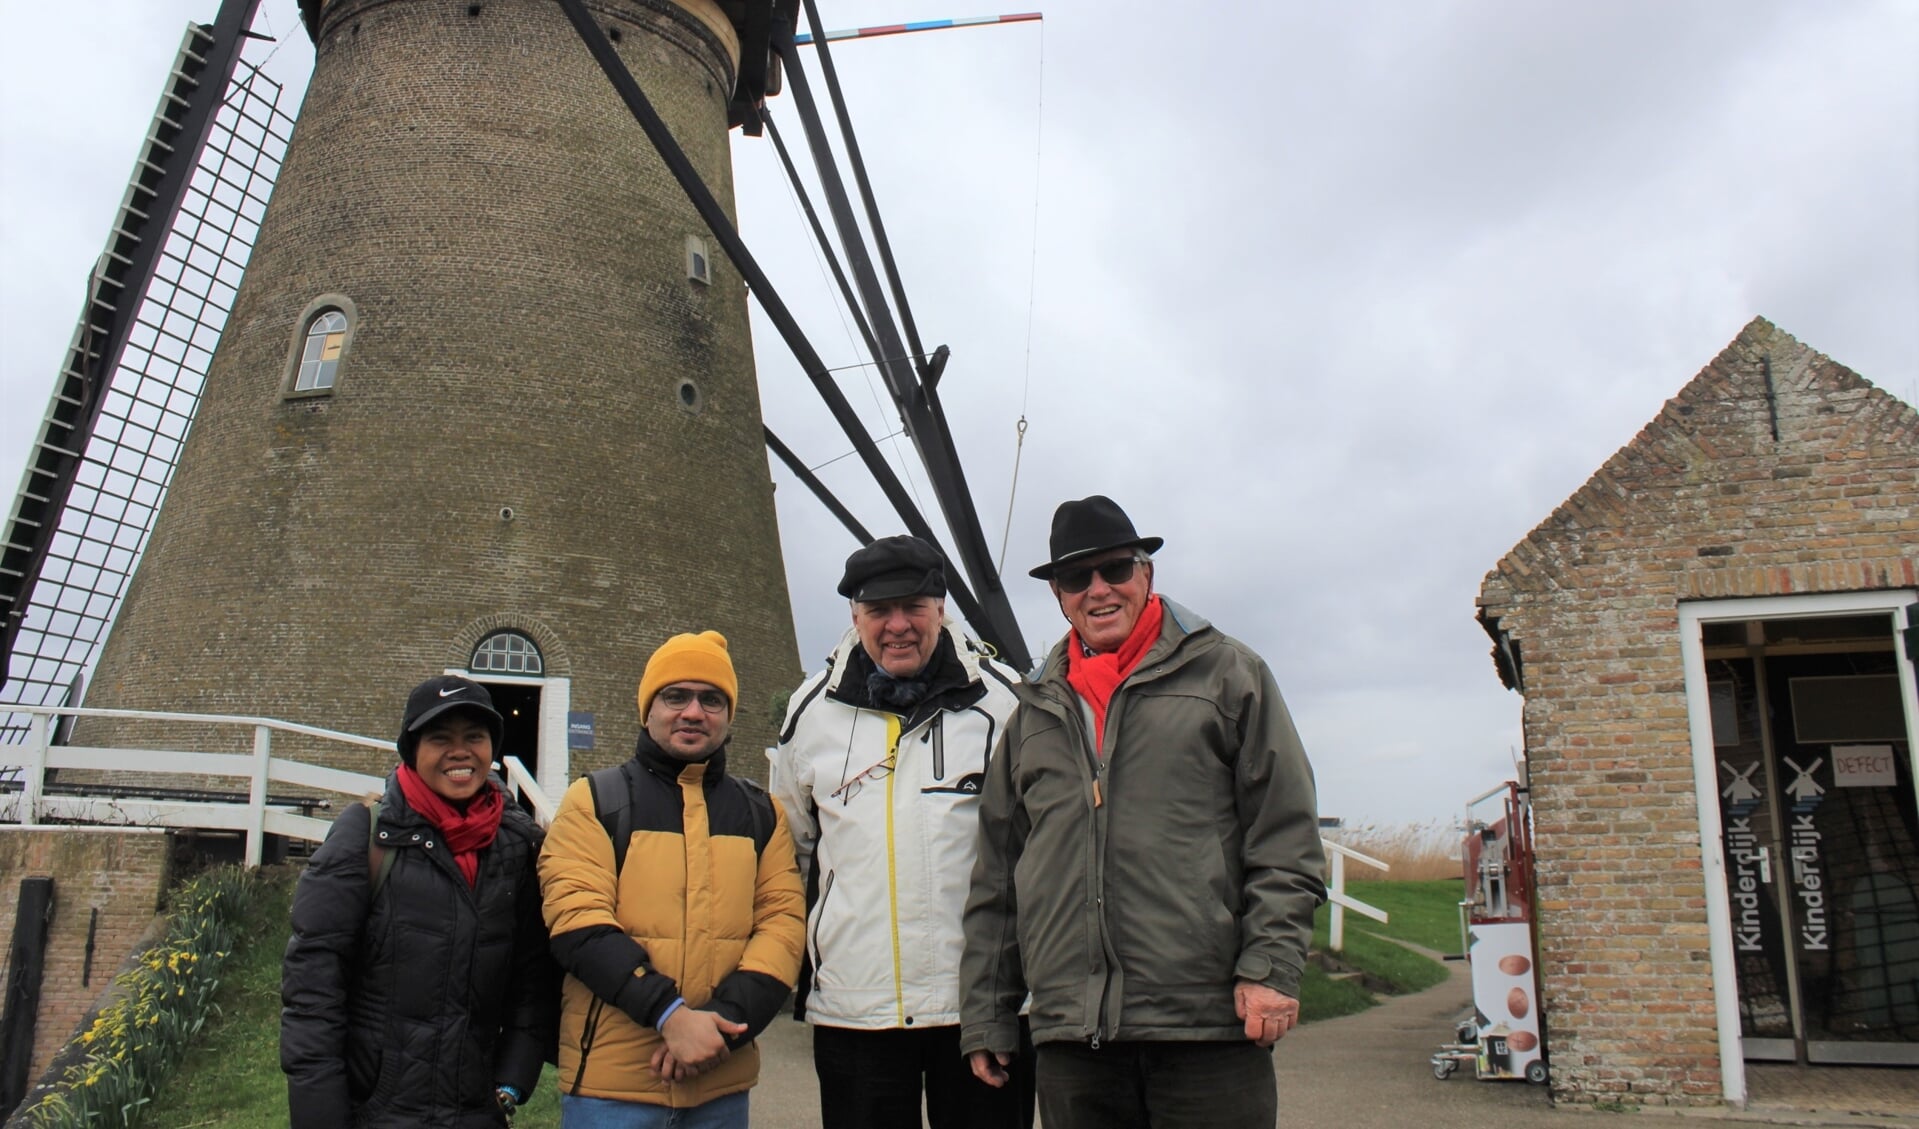 • De bezoekers aan Kinderdijk, met v.l.n.r. Jennife Dumalag-Borong uit Filipijnen, Santosh Adhikari uit Nepal, Arie den Boer uit Alblasserdam en Jaap Ridder uit Krimpen aan de IJssel.